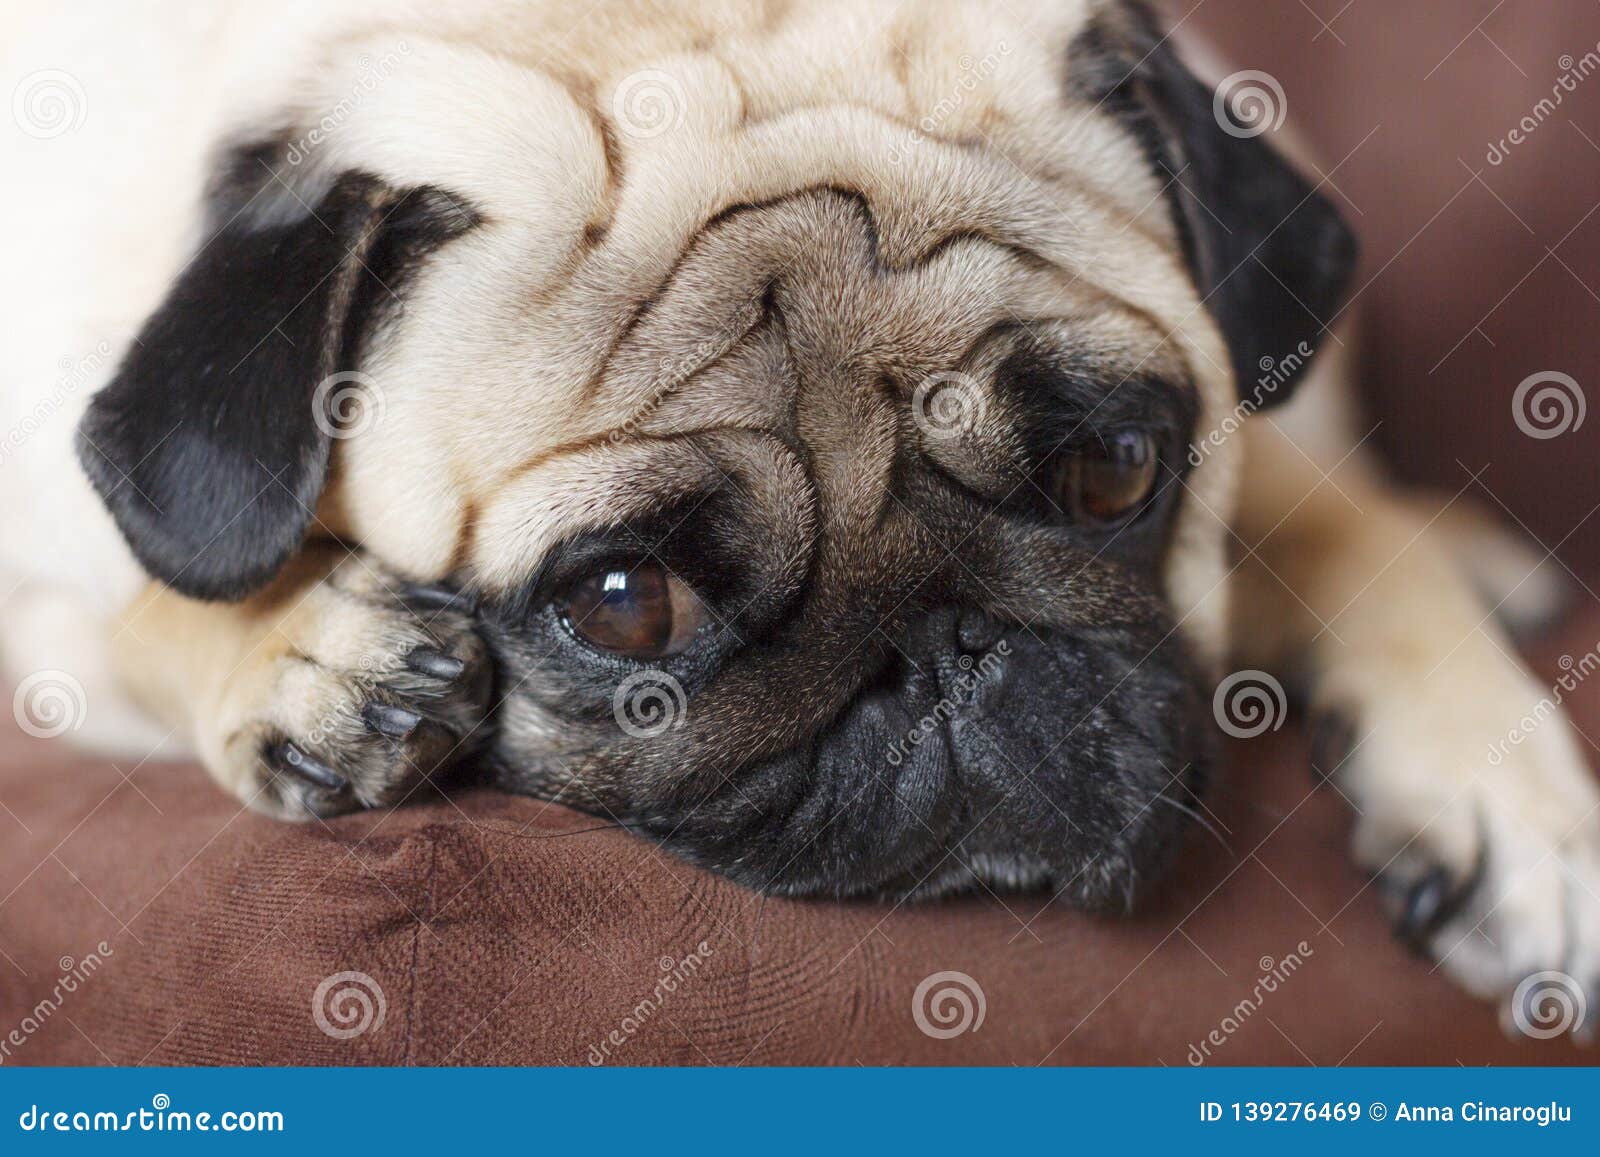 Very Sad Dog Pug With Sad Big Eyes Lies On Brown Chair Stock Image